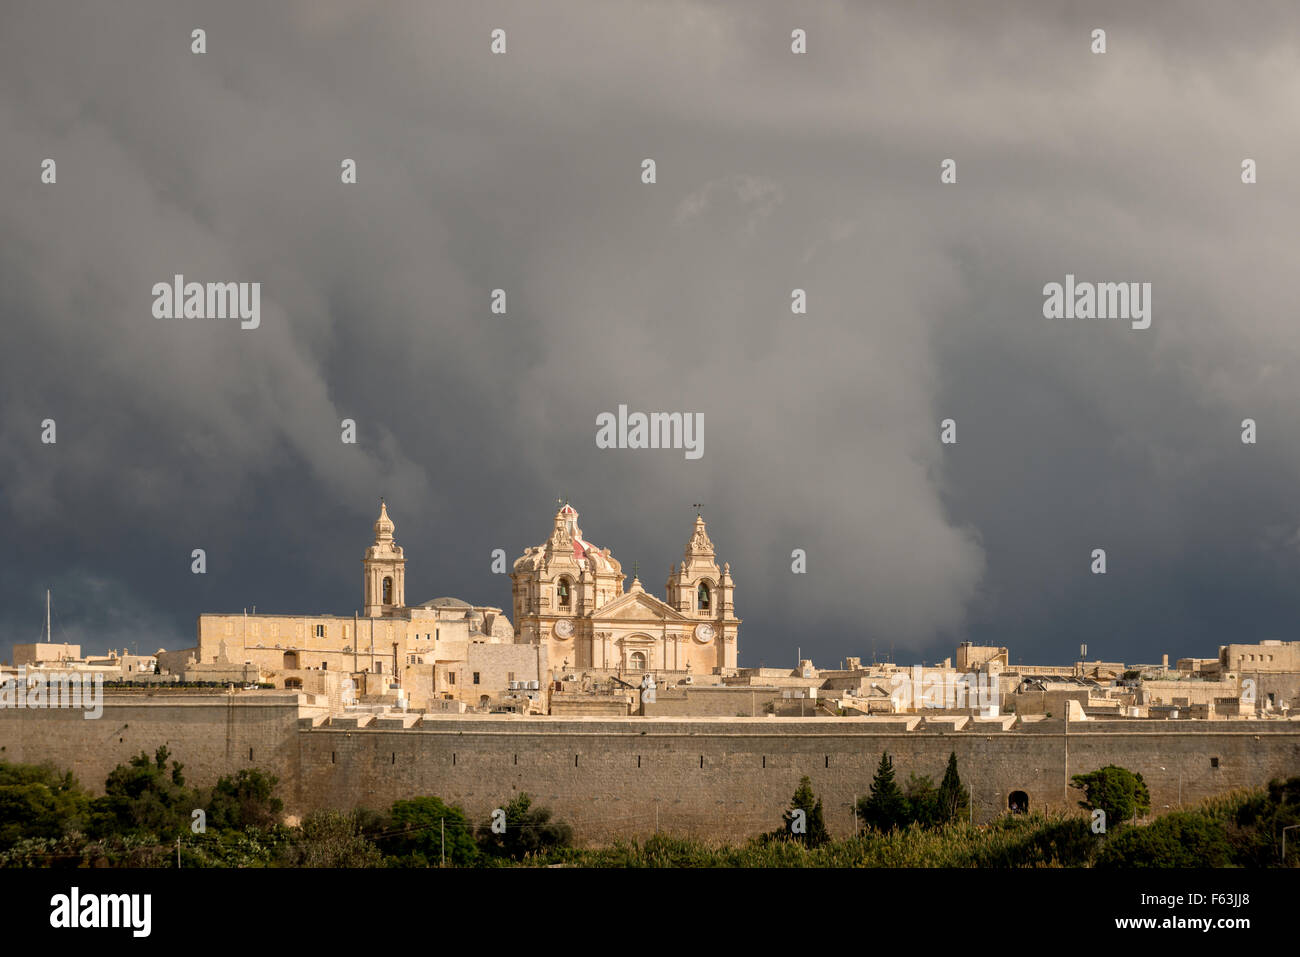 Une vue générale de la ville fortifiée de Mdina à Malte. Banque D'Images